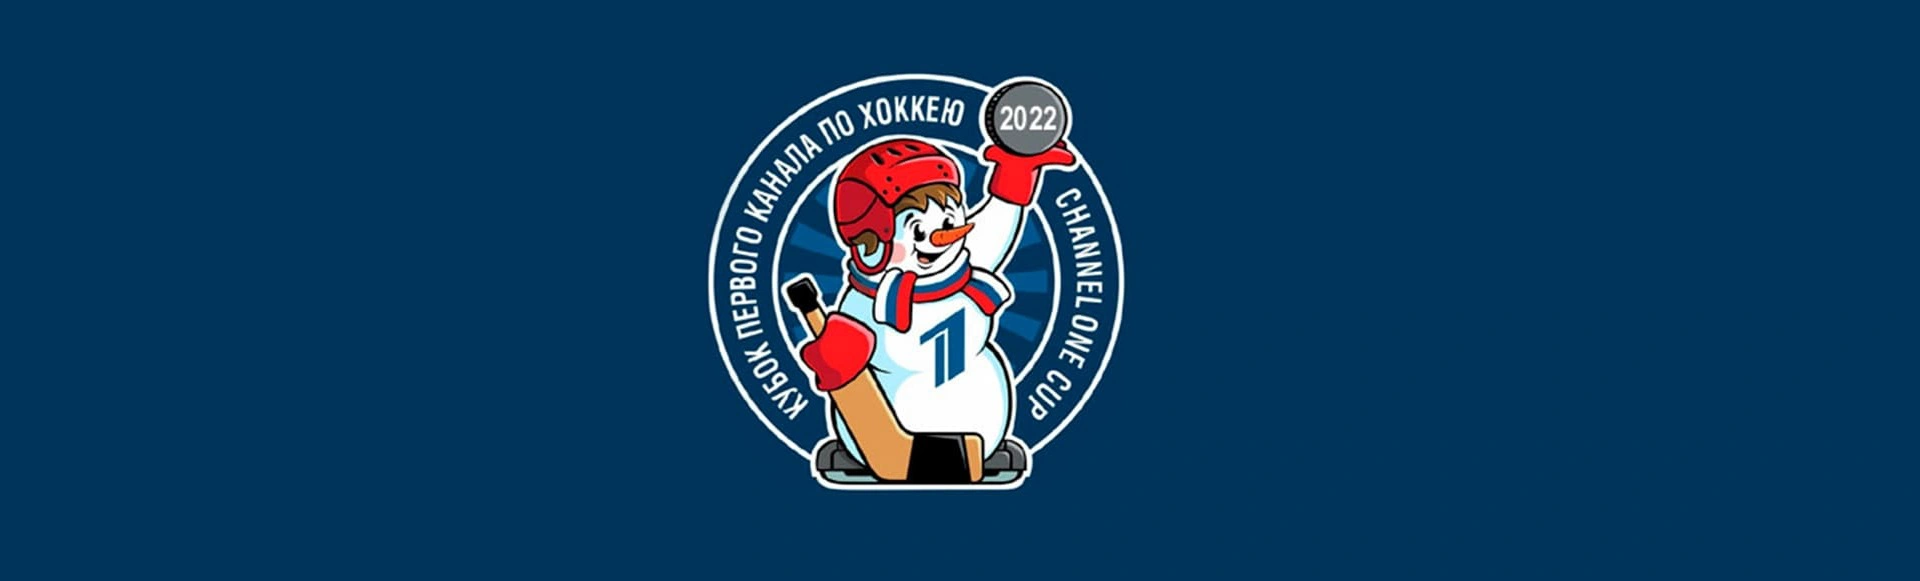 Международный турнир в формате «3 на 3». Кубок Первого канала 2022
